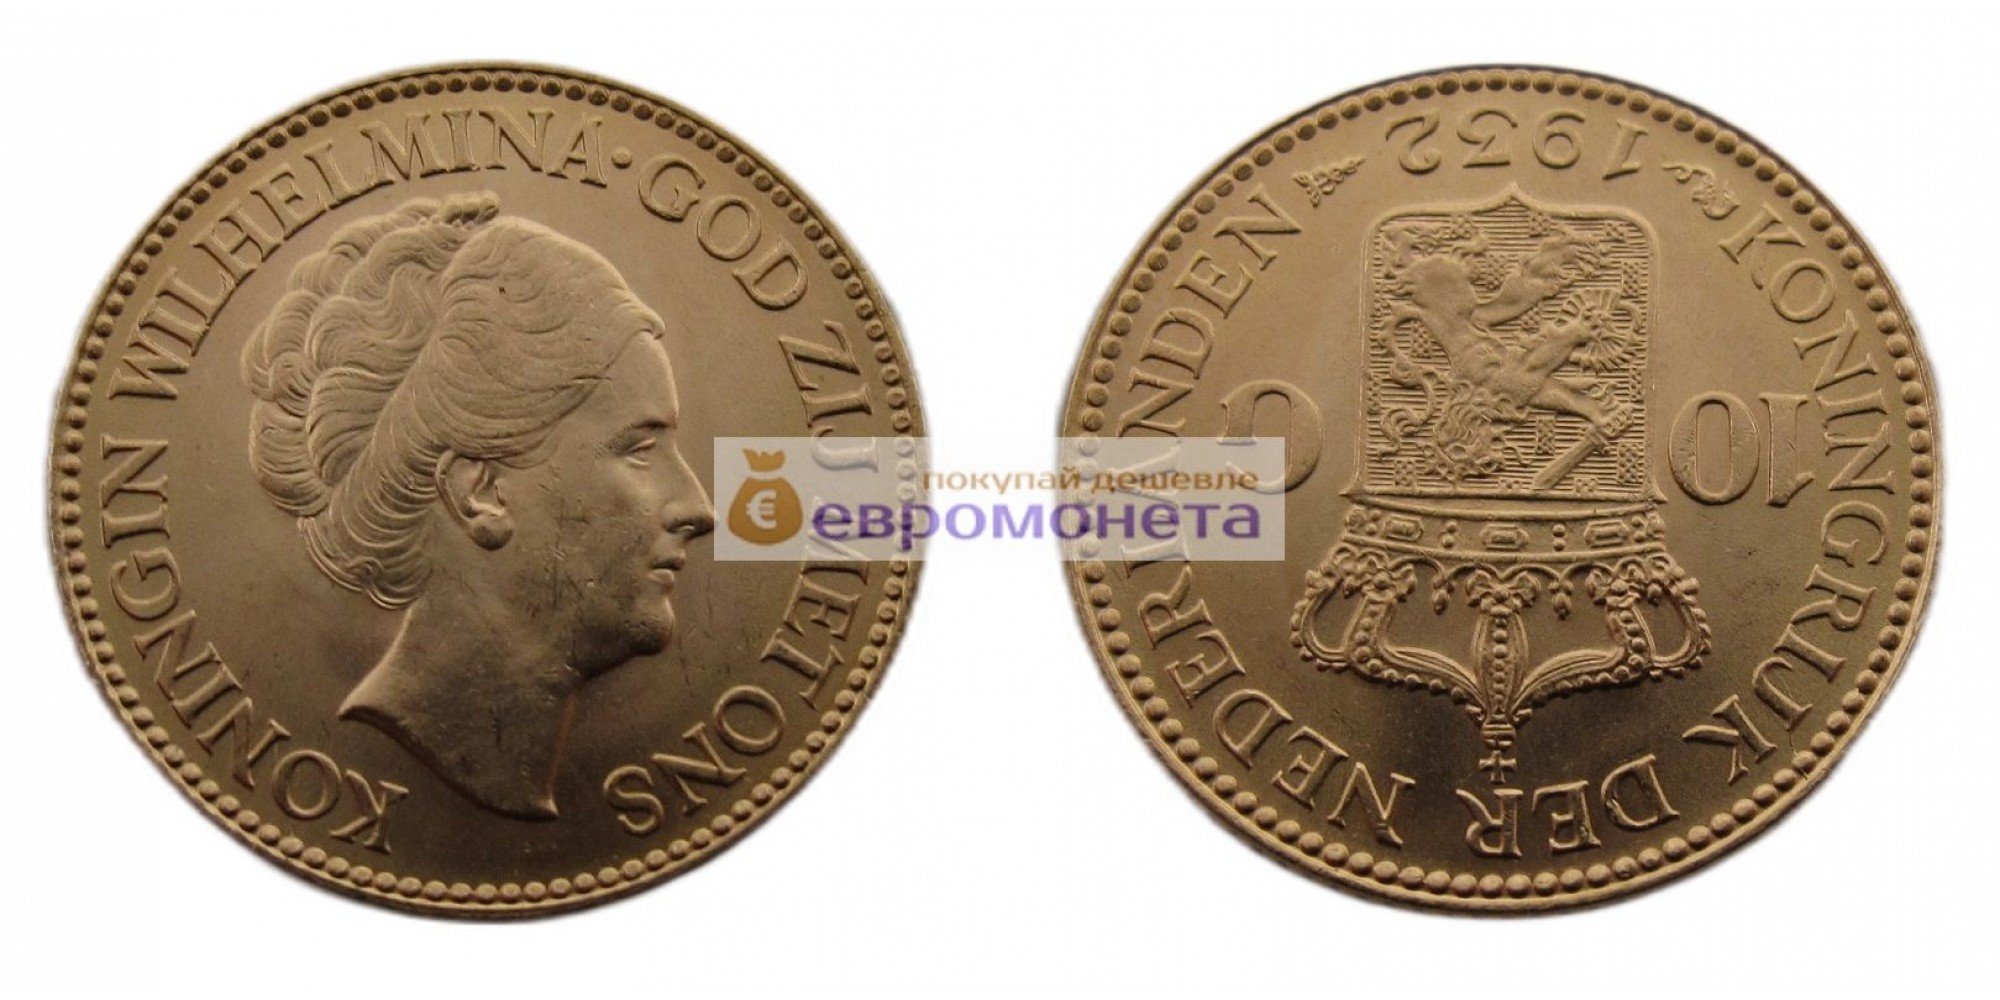 Нидерланды 10 гульденов 1932 год Королева Вильгельмина. Золото 900 проба, 6.73 грамм. АЦ (UNC)